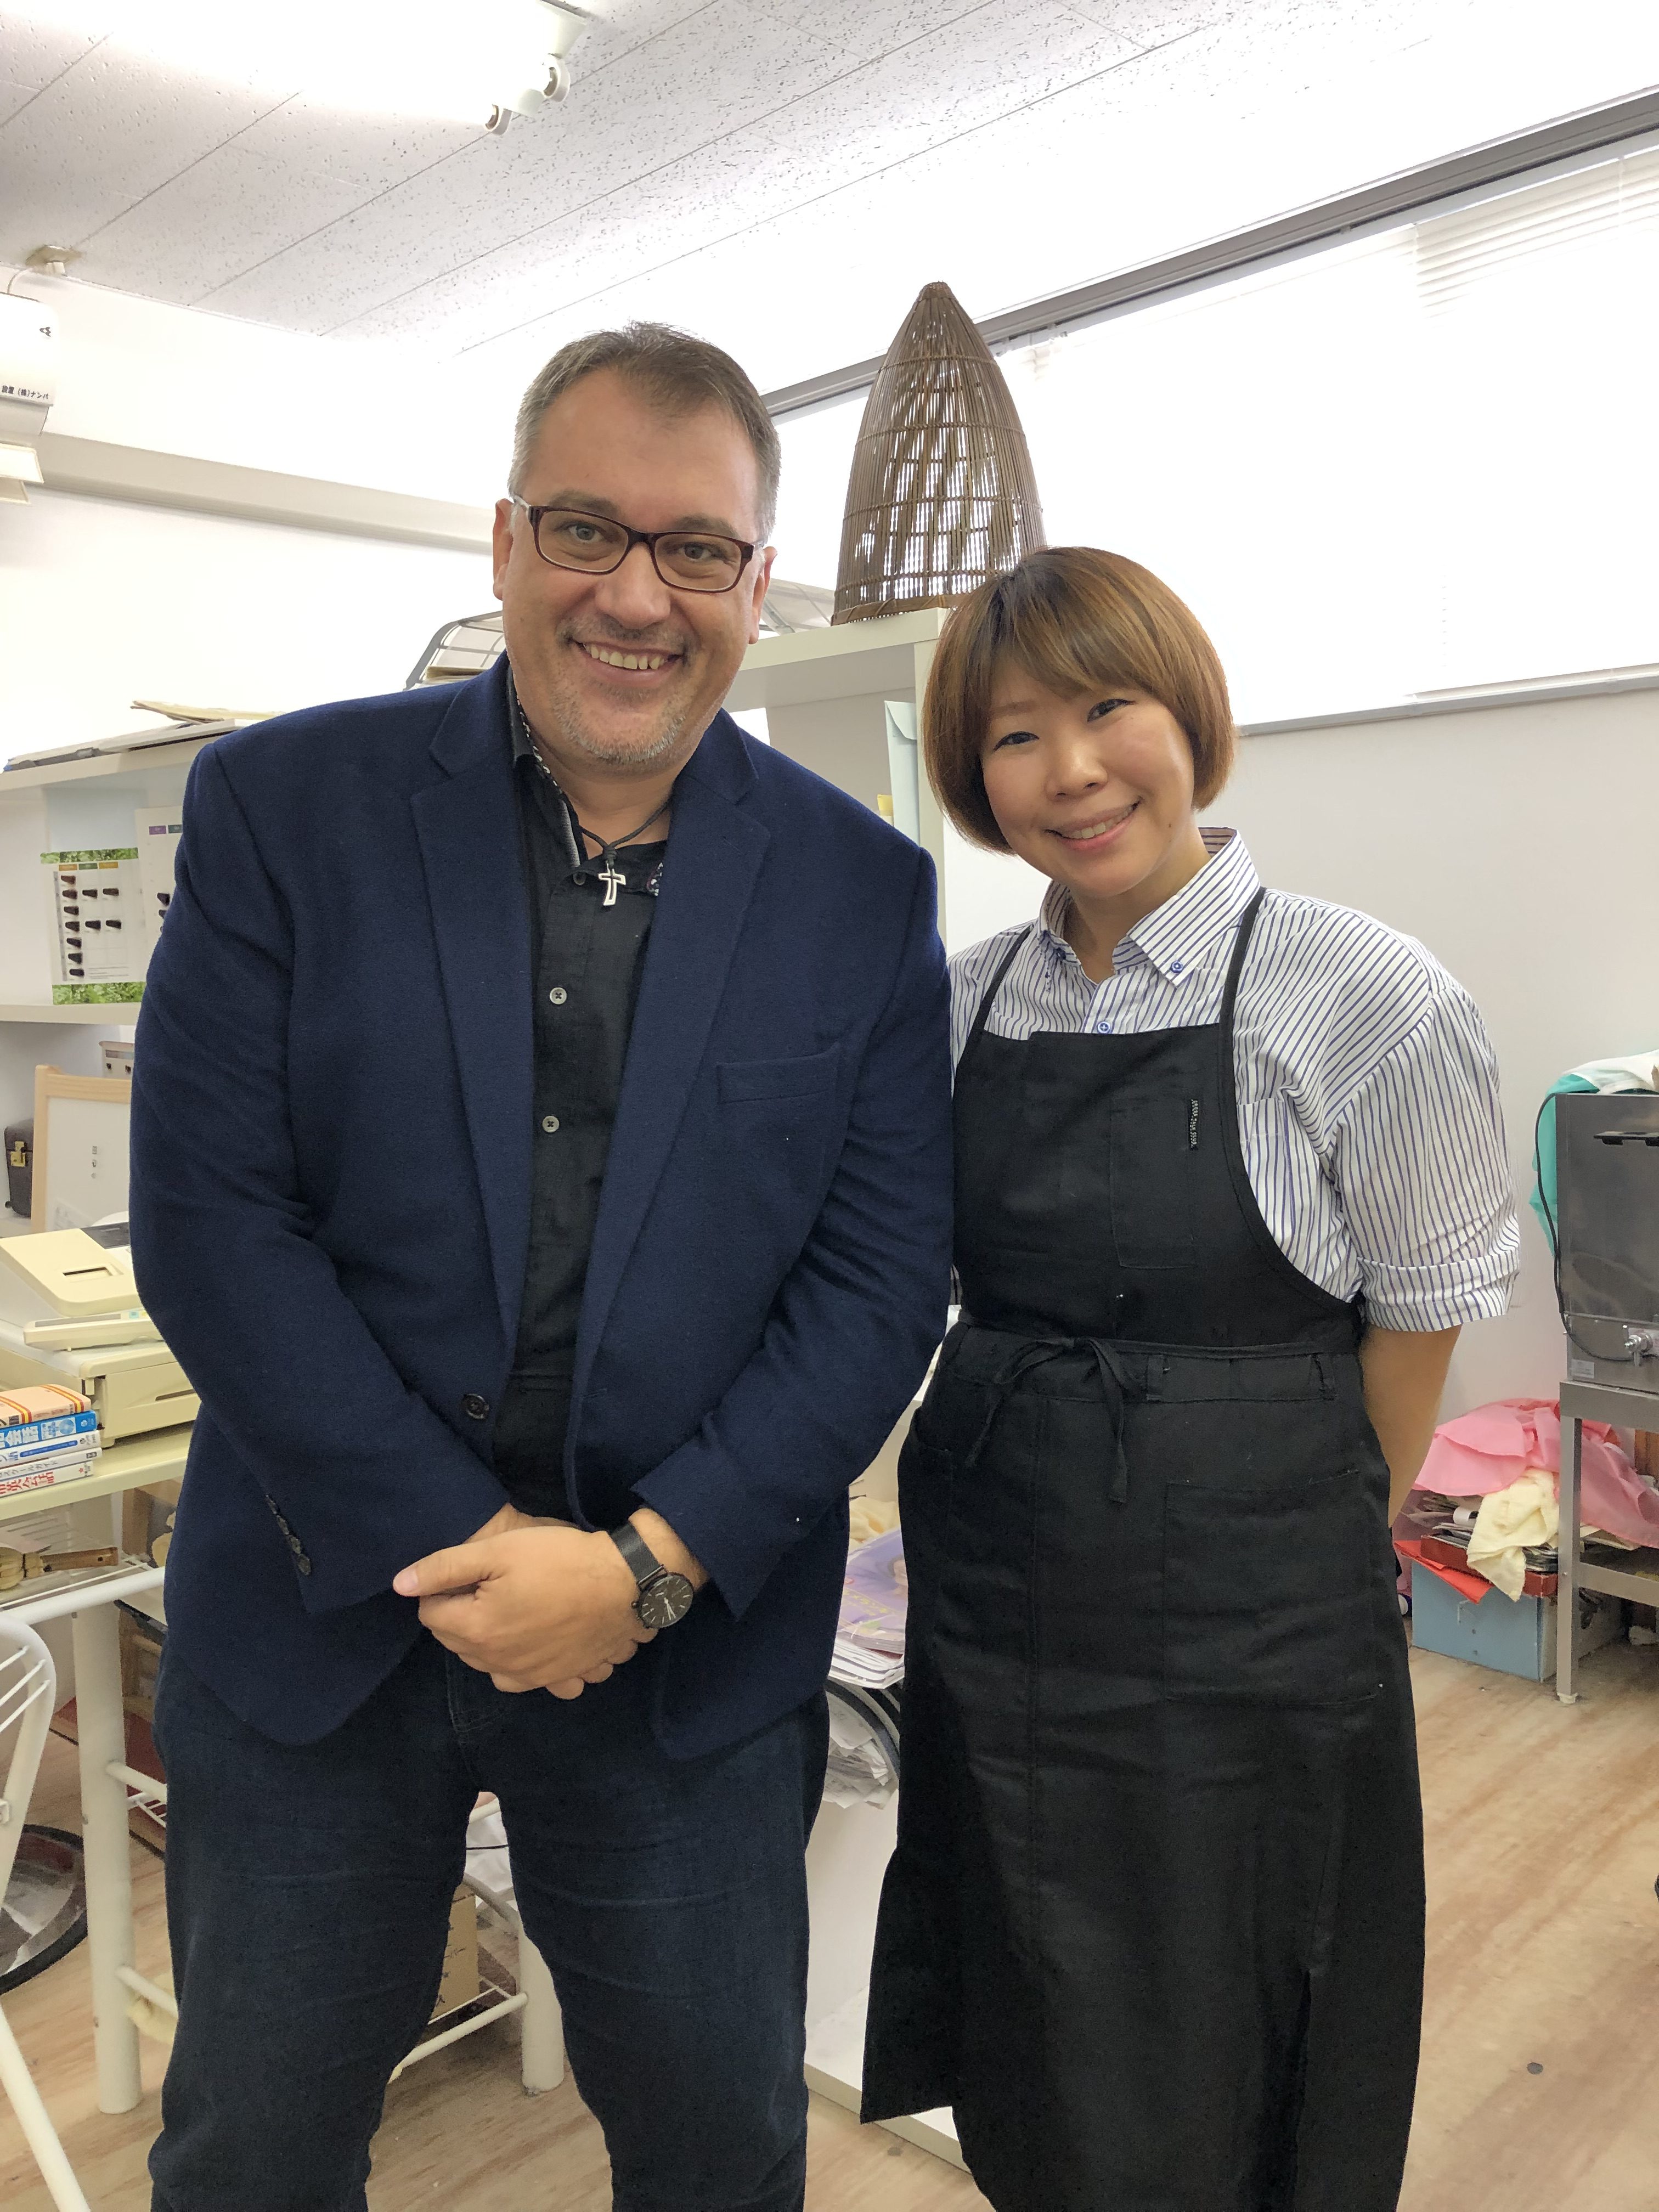 Hisae Fukazawa with Christian Vlad, a professor at NUT and a regular customer at Fukazawa's salon at the university.